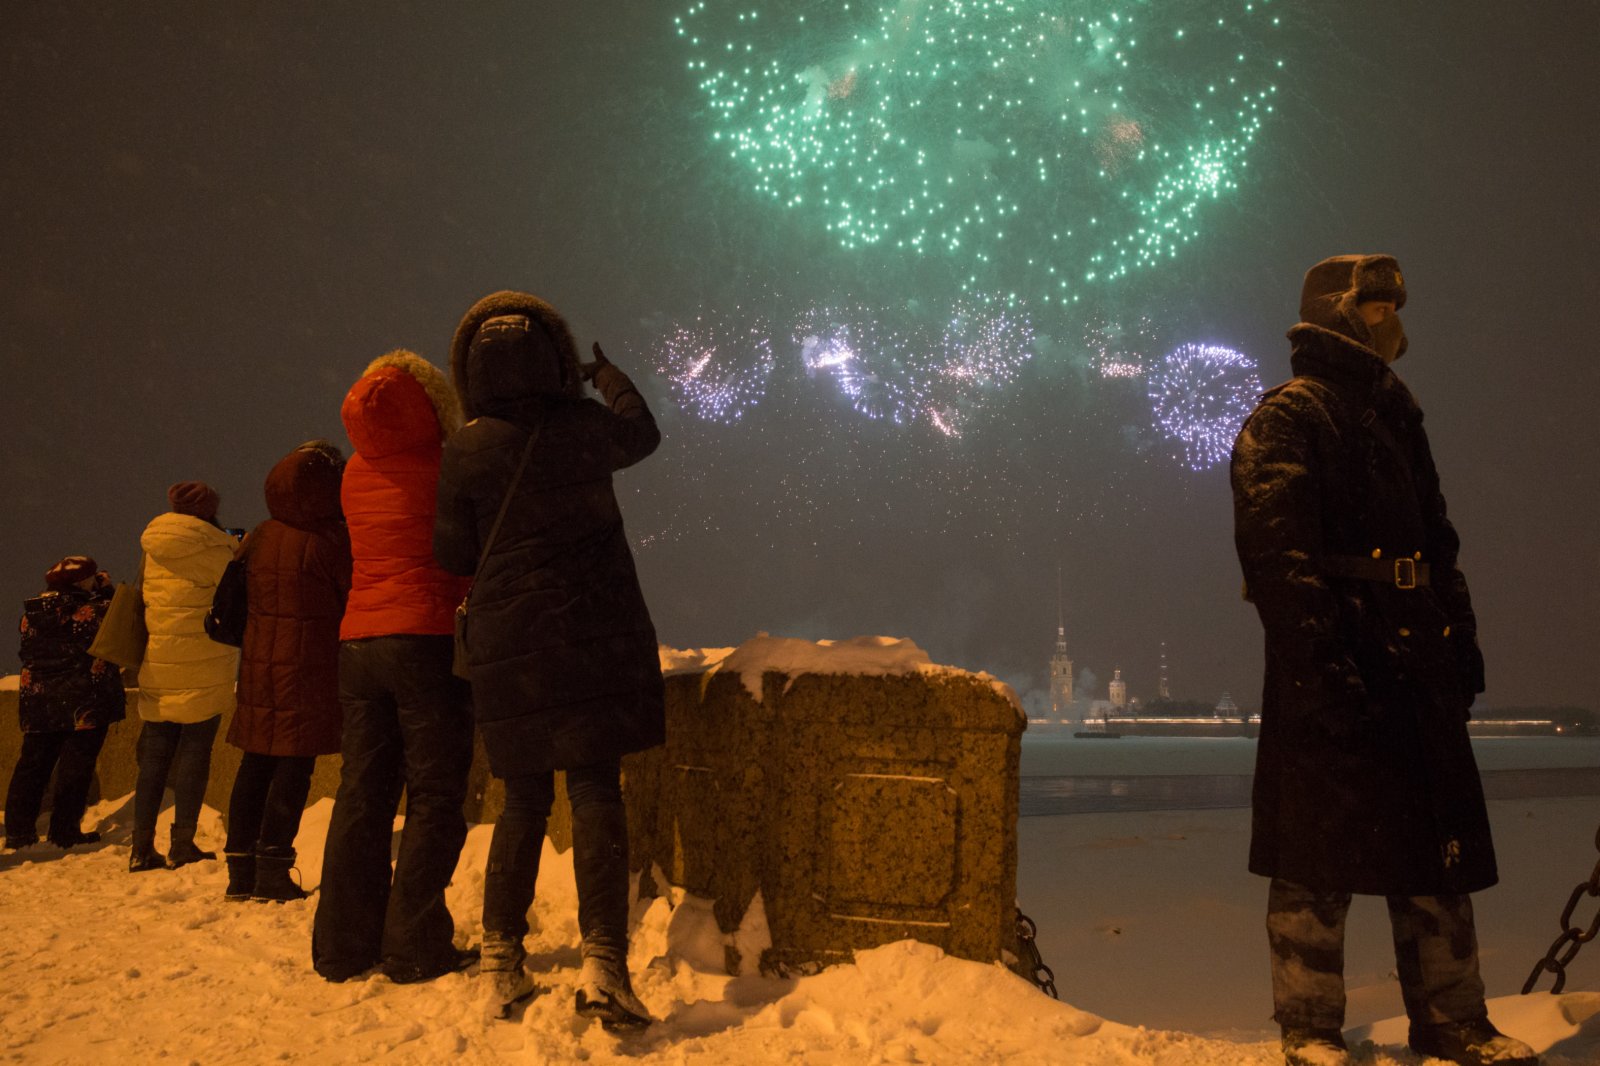 2月23日，俄羅斯聖彼得堡彼得堡羅要塞上空燃起煙花。
當晚，俄羅斯聖彼得堡燃放煙花慶祝祖國保衛者日。（新華社）